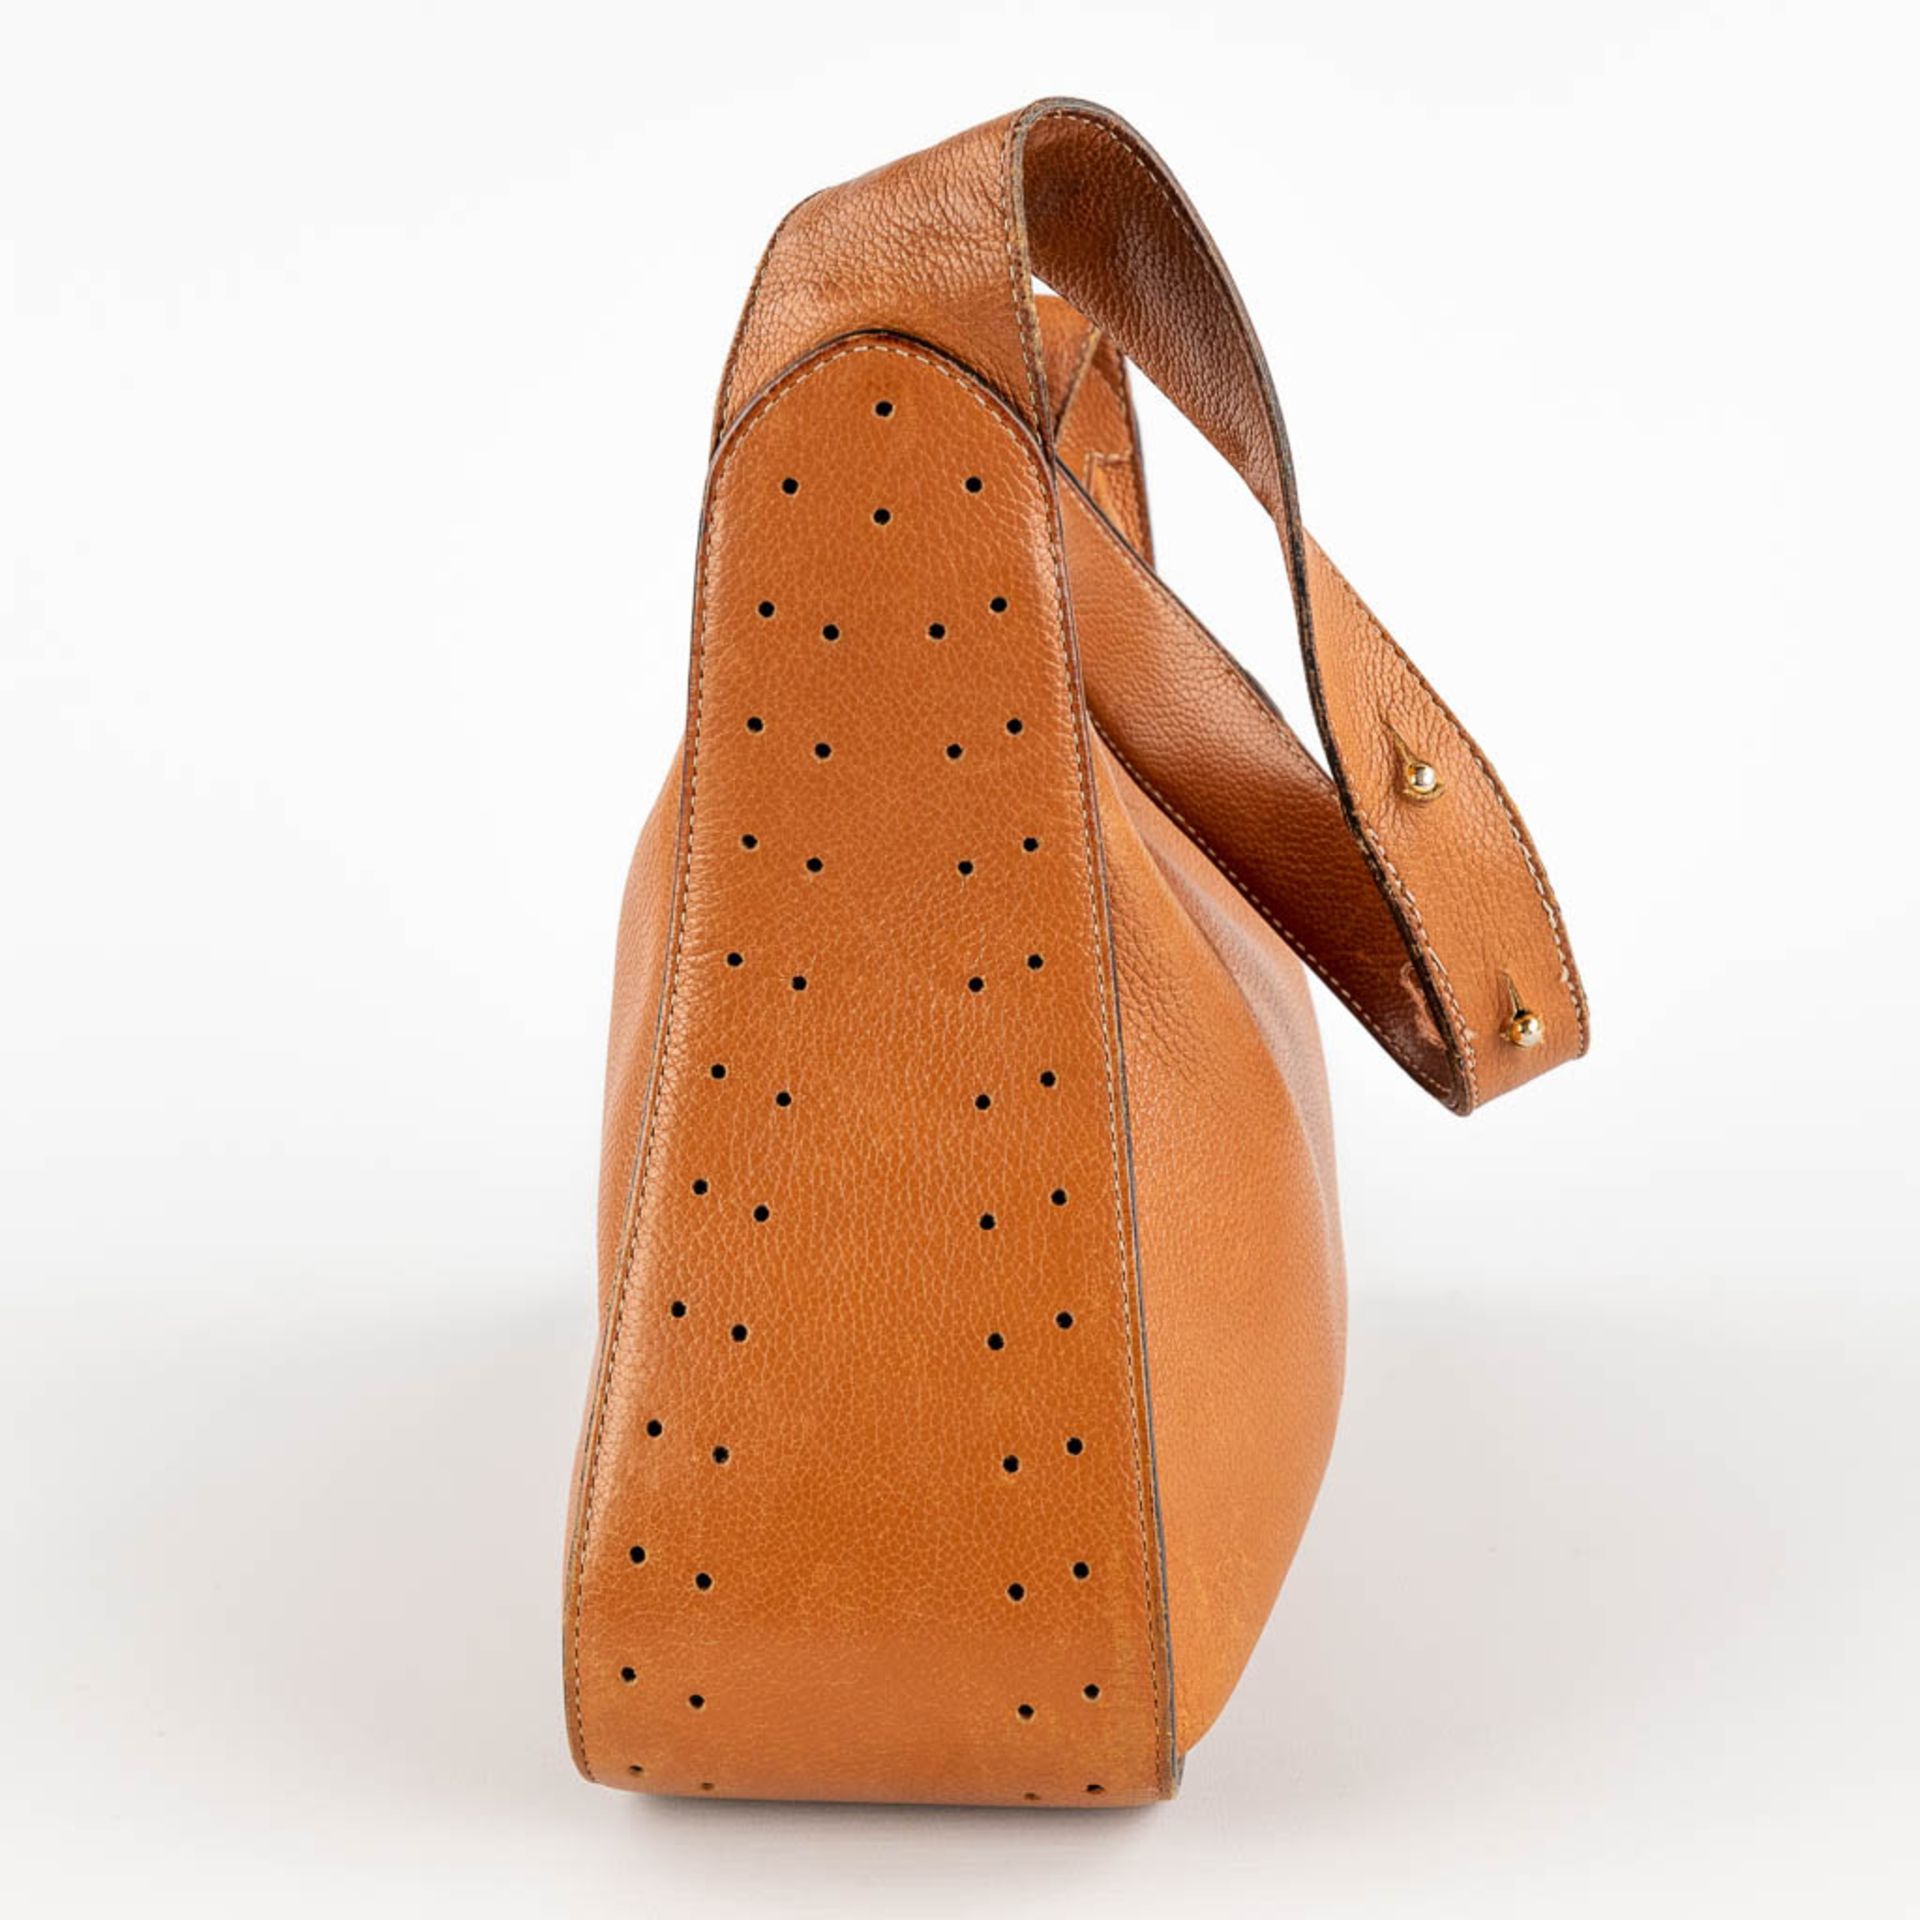 Delvaux, Pensée, a handbag made of brown leather. (W:24 x H:32 cm) - Bild 5 aus 18